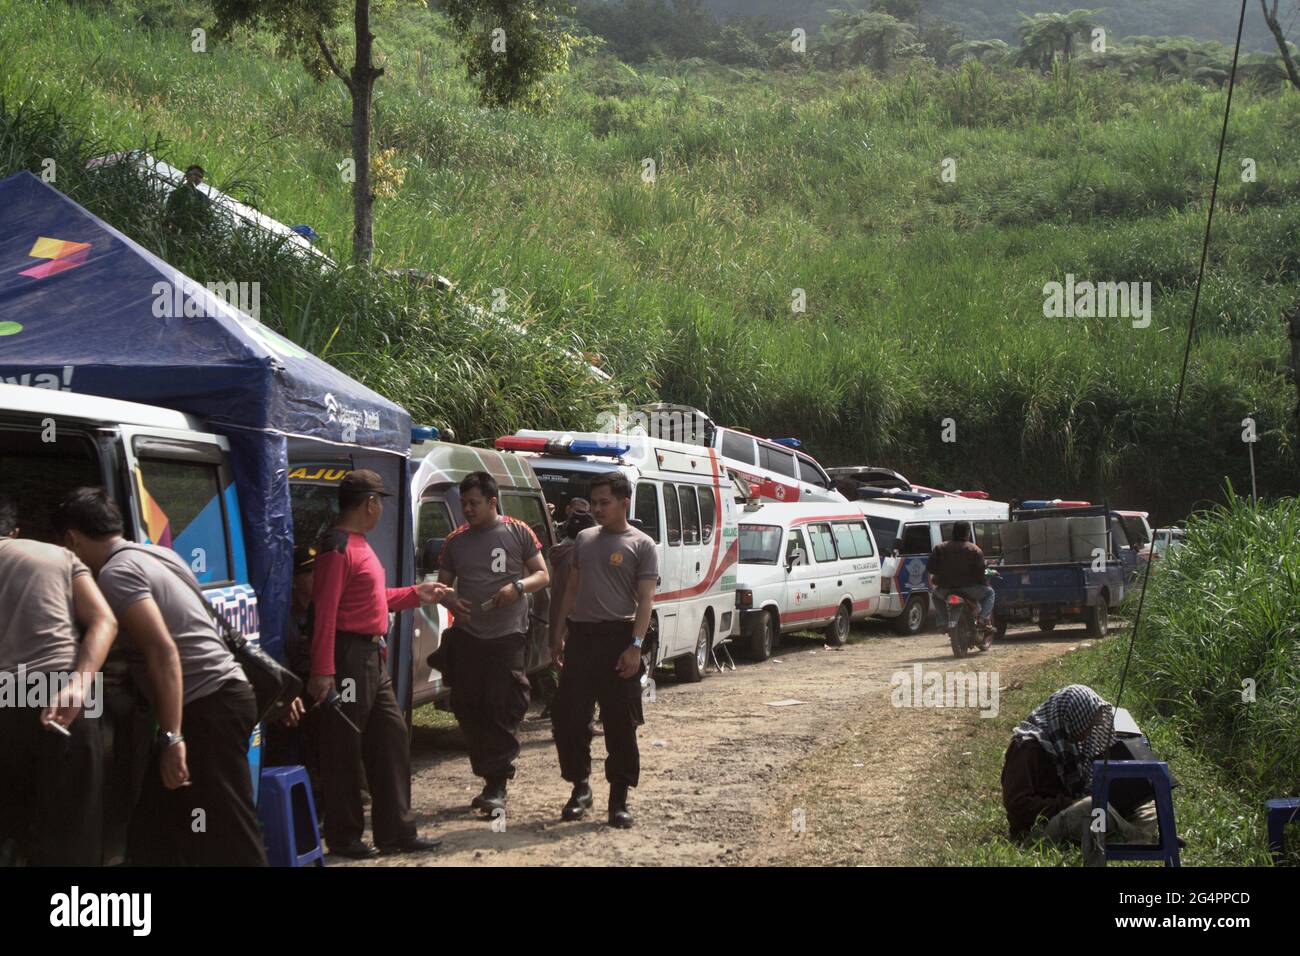 Mount Salak, West-Java, Indonesien. 11.Mai 2012. Eine Reihe von Krankenwagen am Fuße des Mount Salak während der Such- und Rettungsmission für das Sukhoi Superjet 100 (SSJ-100) Flugzeug, das am 9. Mai auf dem Berg abgestürzt ist. Stockfoto